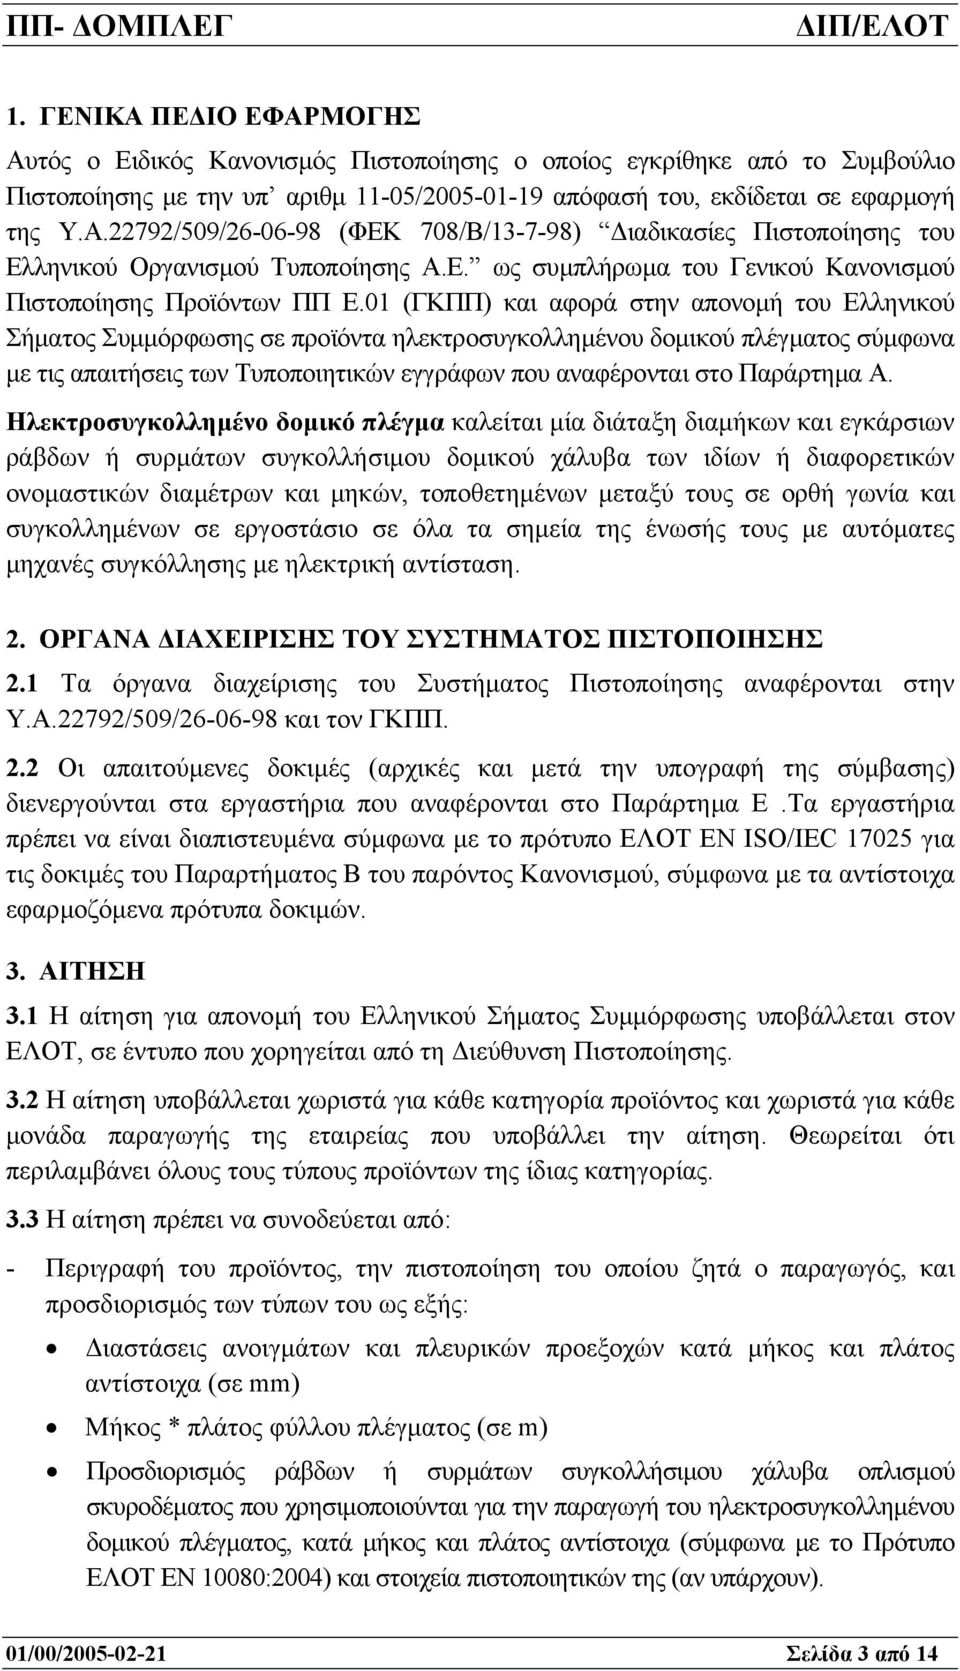 01 (ΓΚΠΠ) και αφορά στην απονοµή του Ελληνικού Σήµατος Συµµόρφωσης σε προϊόντα ηλεκτροσυγκολληµένου δοµικού πλέγµατος σύµφωνα µε τις απαιτήσεις των Τυποποιητικών εγγράφων που αναφέρονται στο